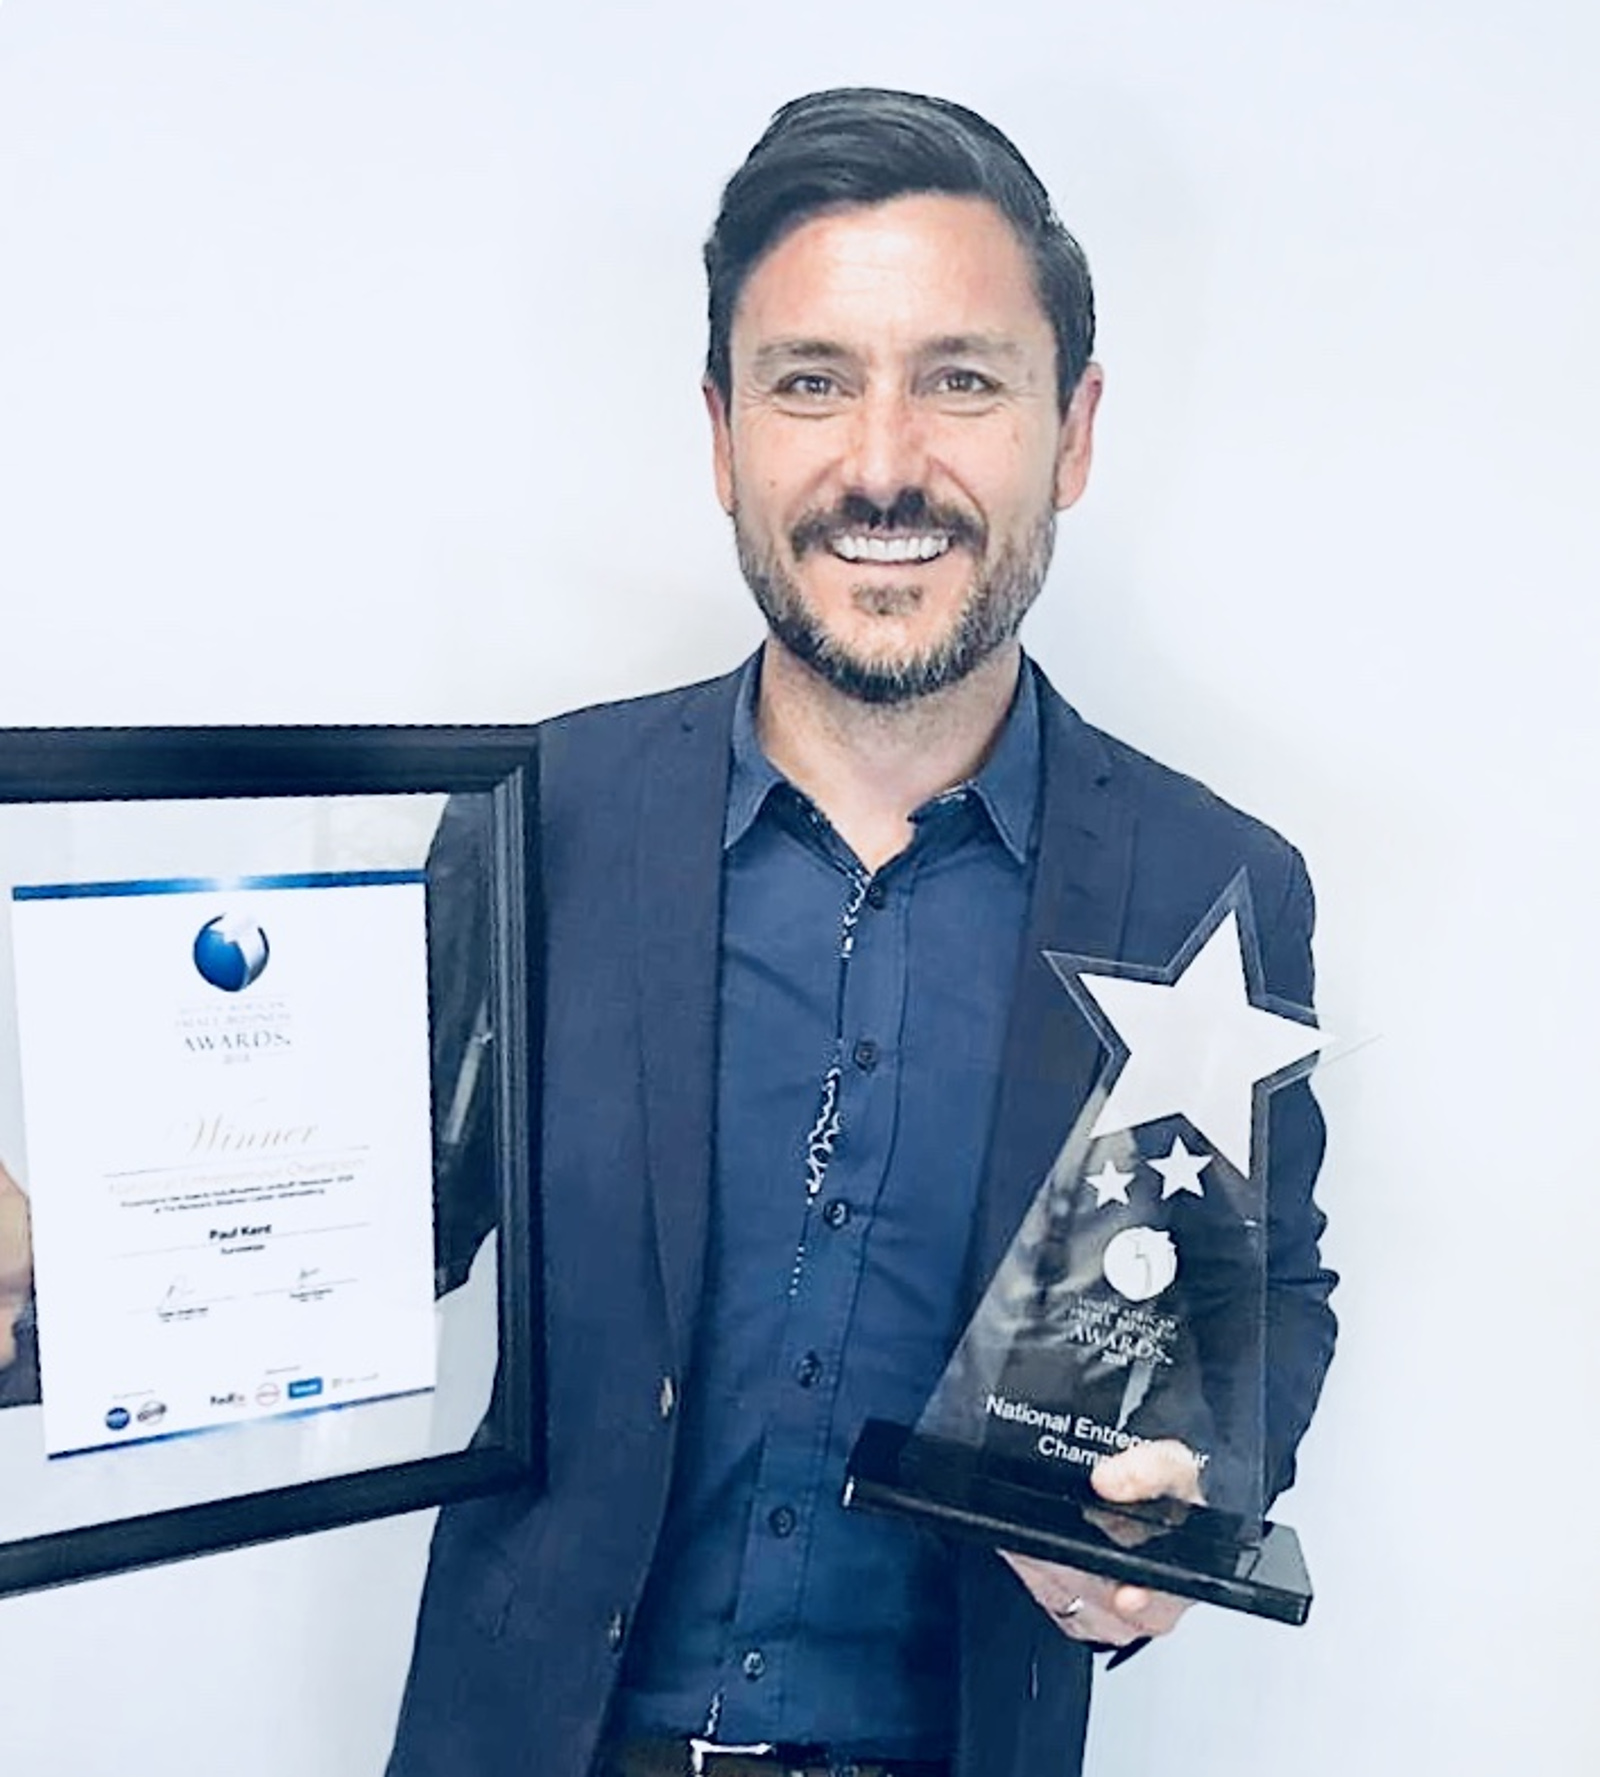 aapaul-kent-sureswipe-receives-2018-enterpreneur-award